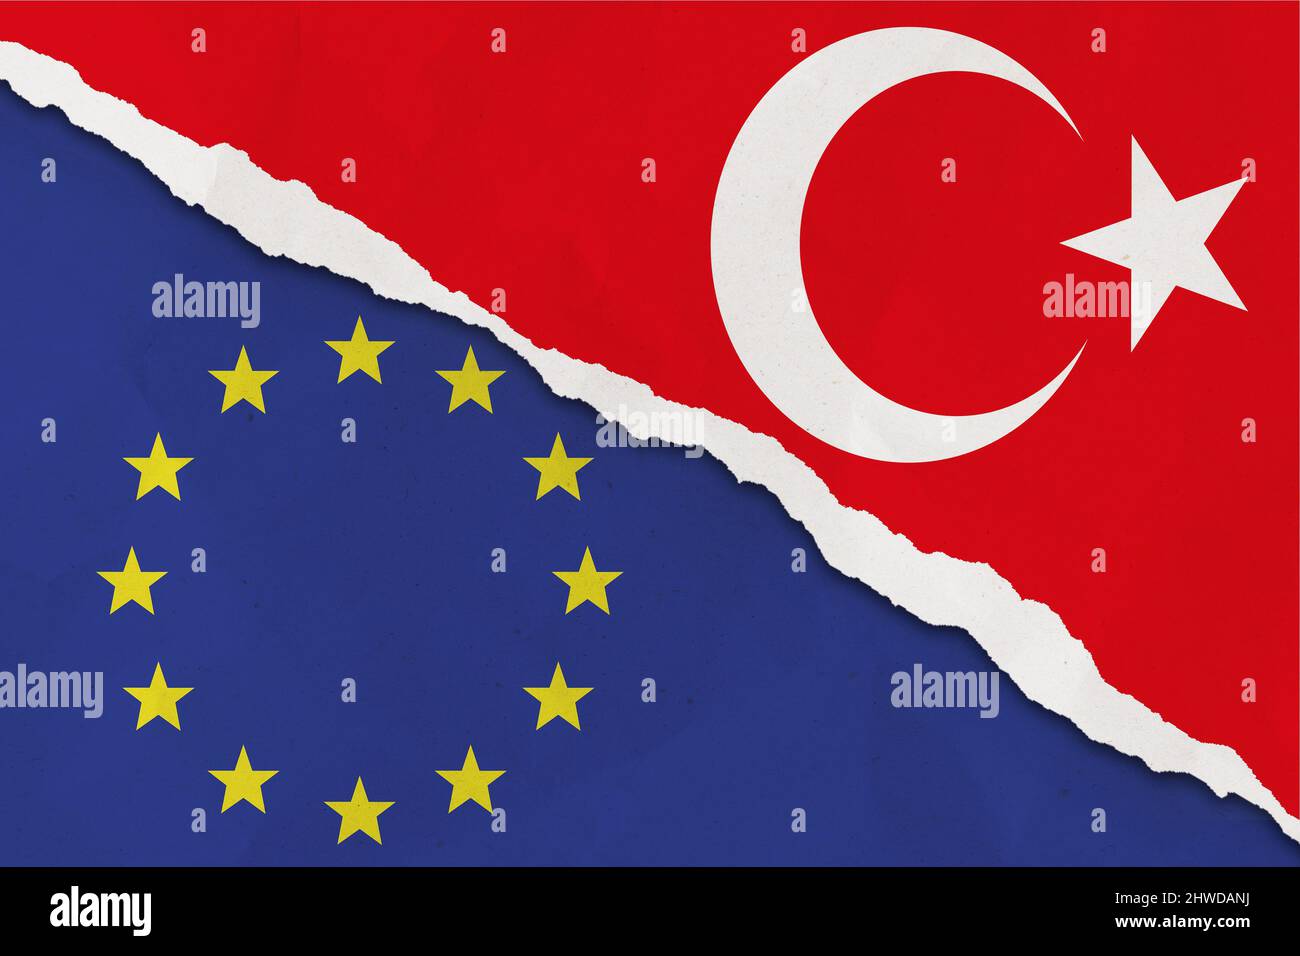 Drapeau de la Turquie et de l'Union européenne papier déchiré grunge fond. Le concept de relation entre l'UE et la Turquie Banque D'Images